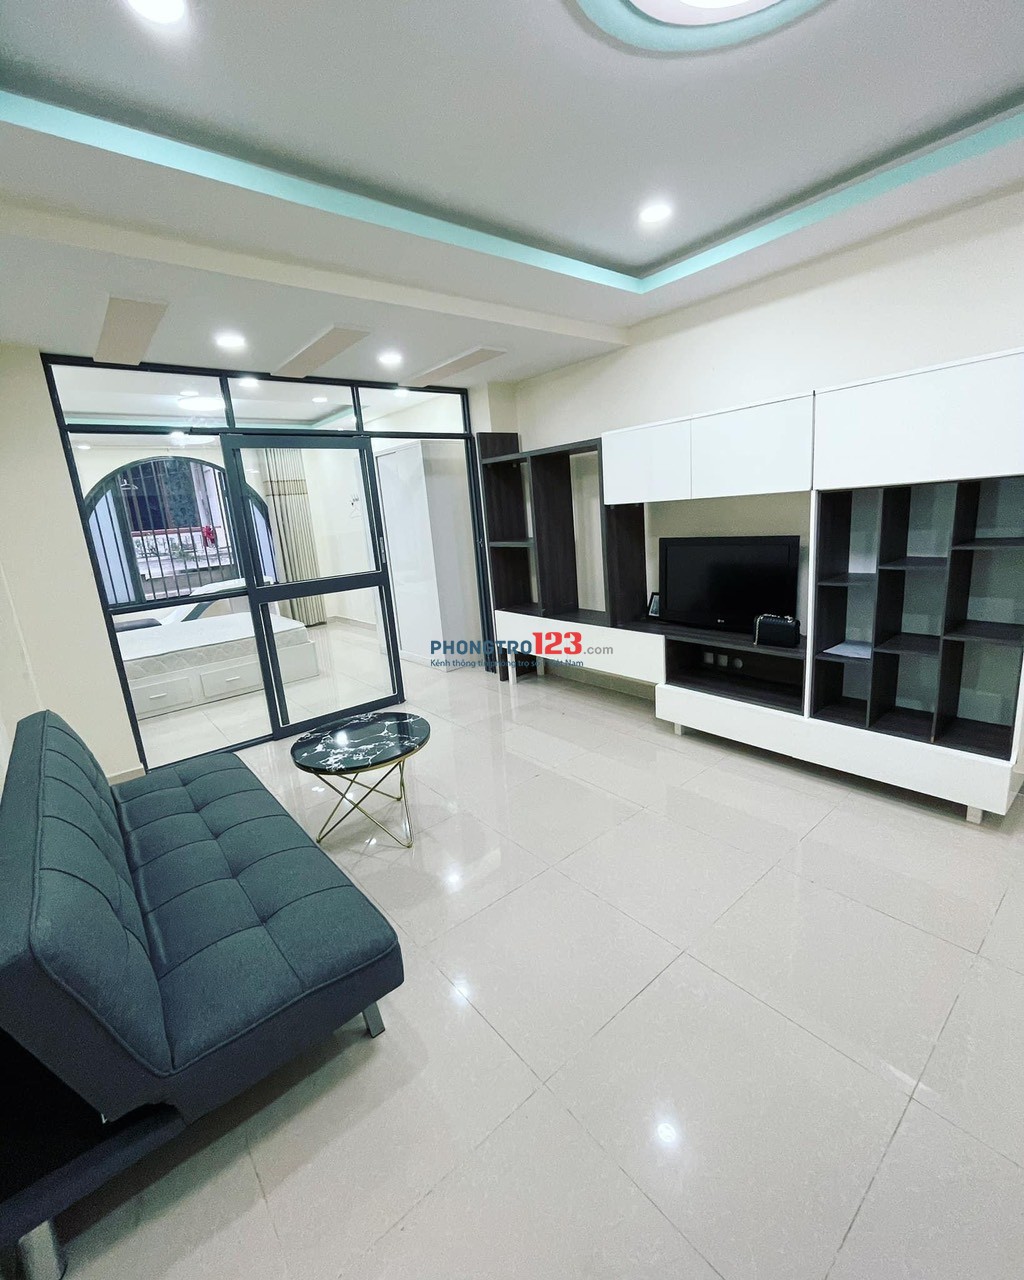 Cho thuê Studio 1PN rộng 50m2 có vách kính tách bếp ở Nguyễn Công Trứ, Quận 1